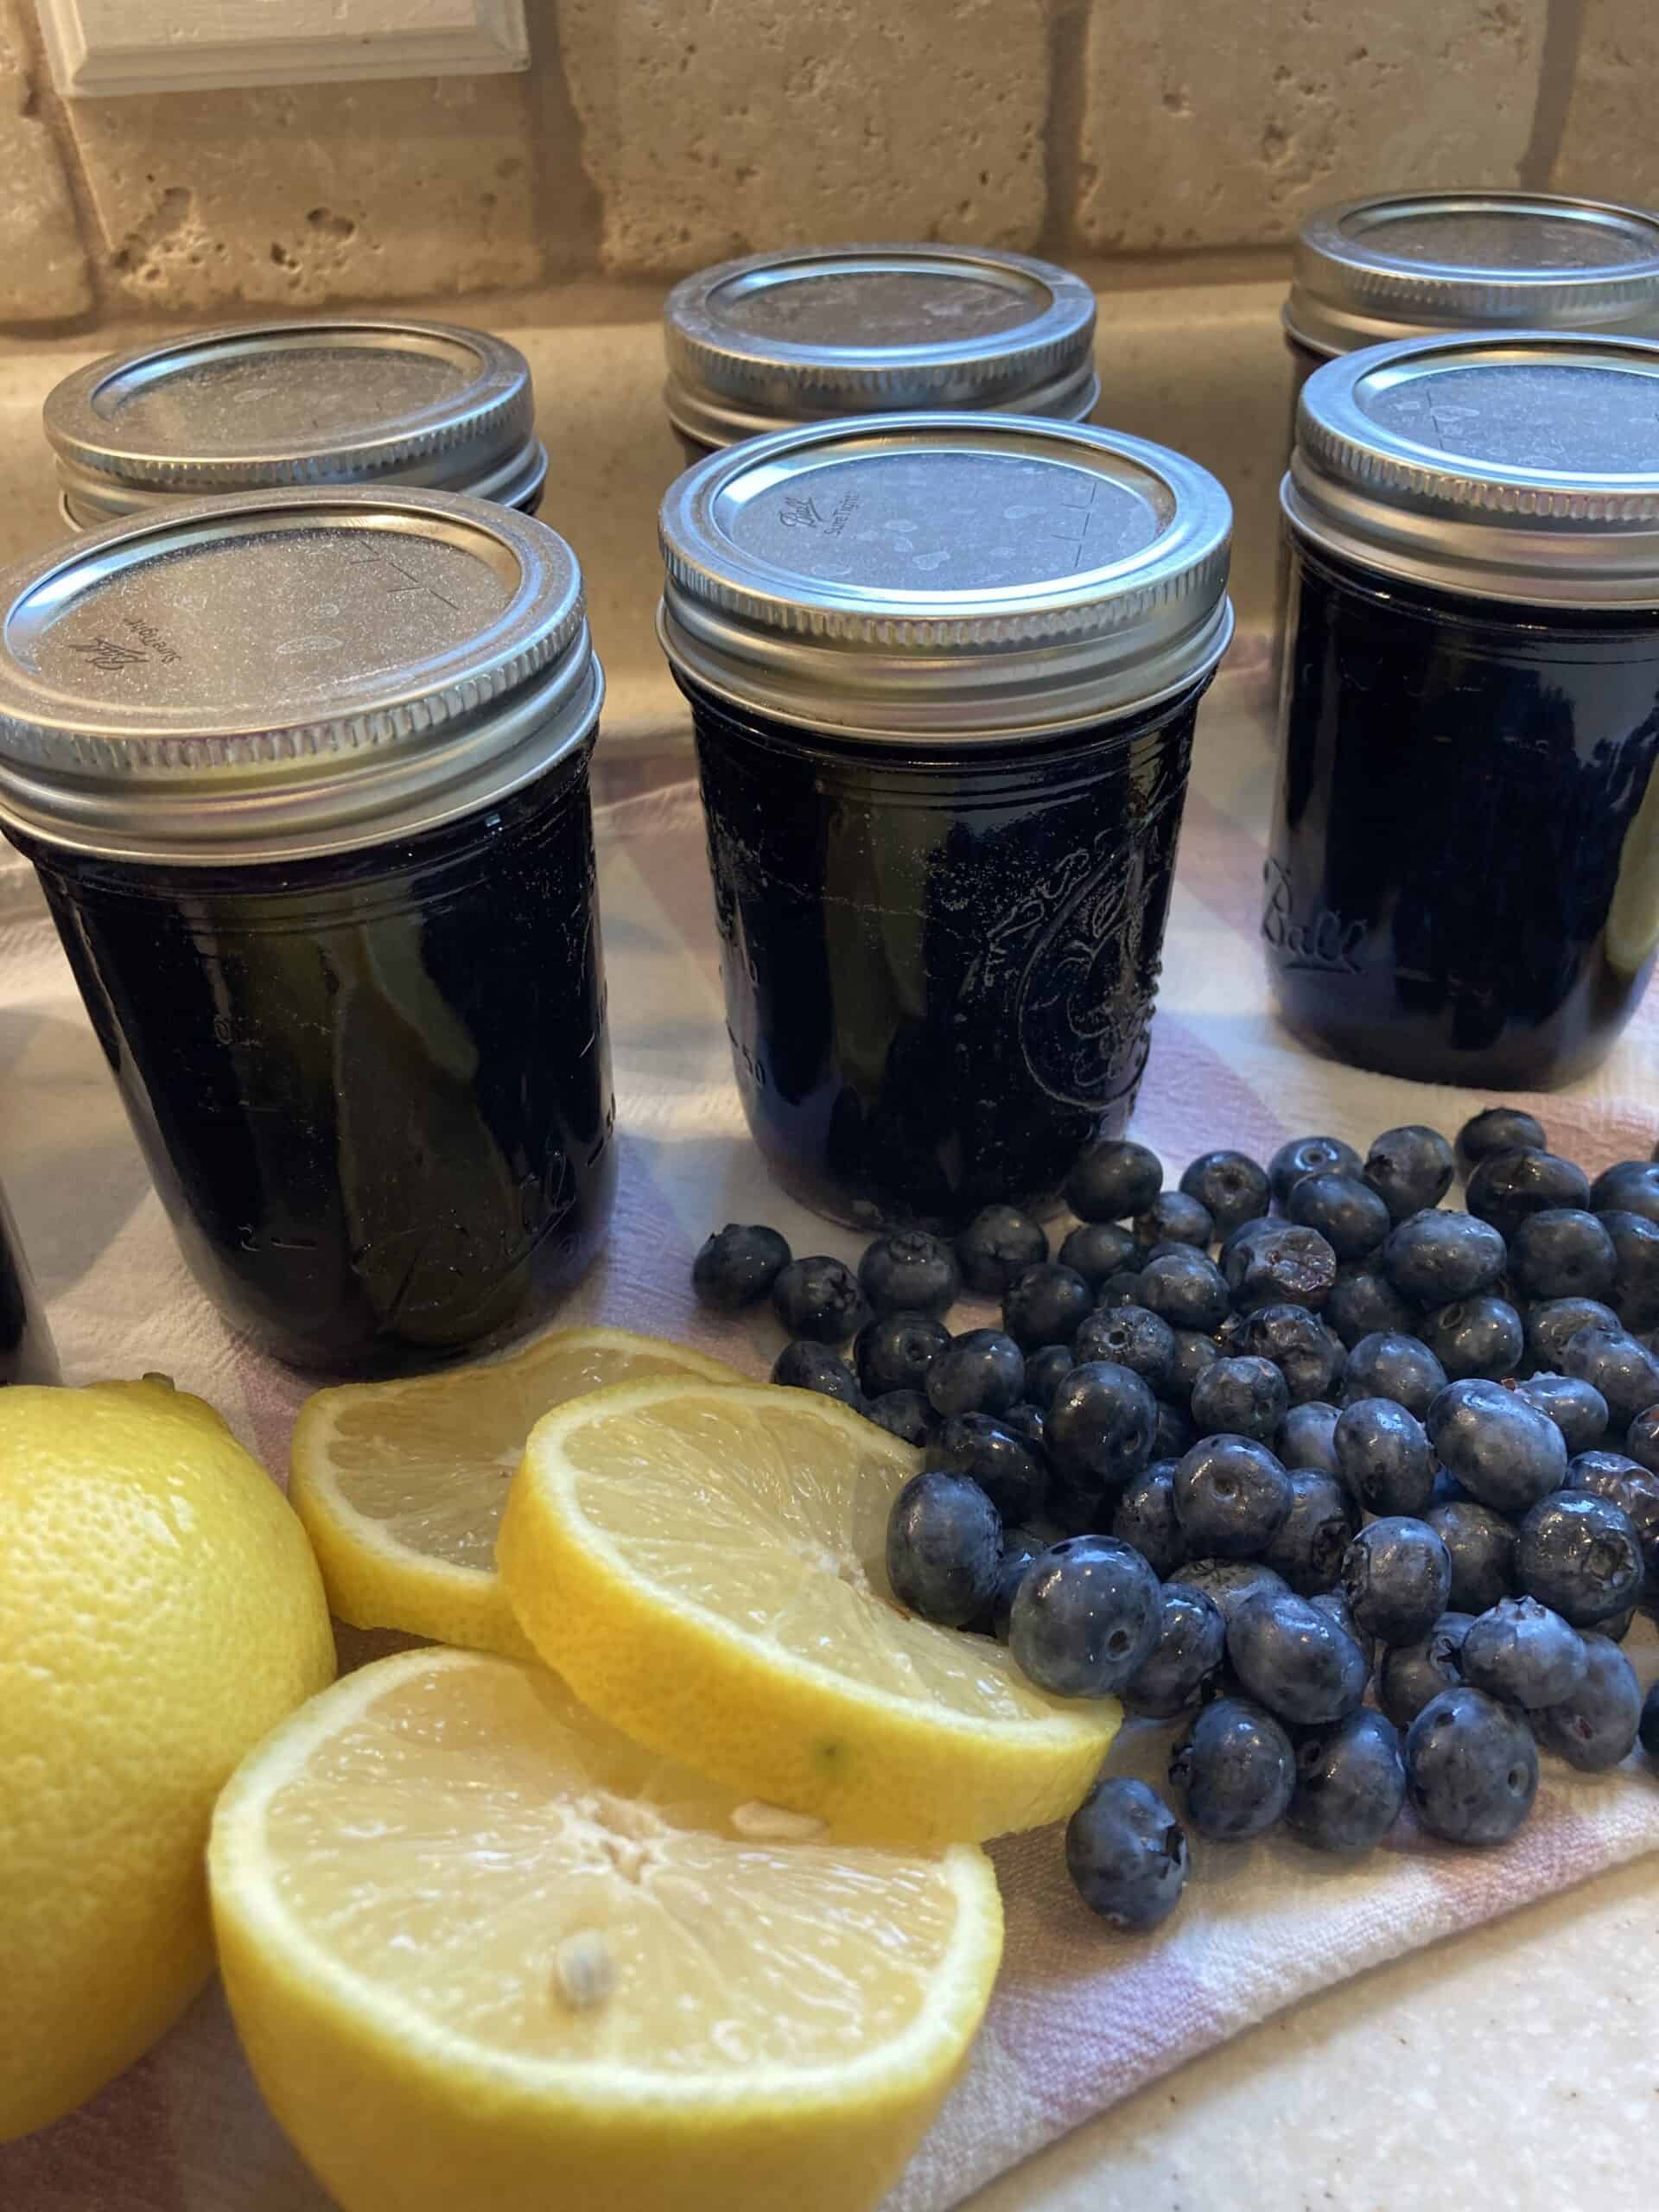 Finished "Tastes Like Summer" Blueberry & Lemon Jam Recipe